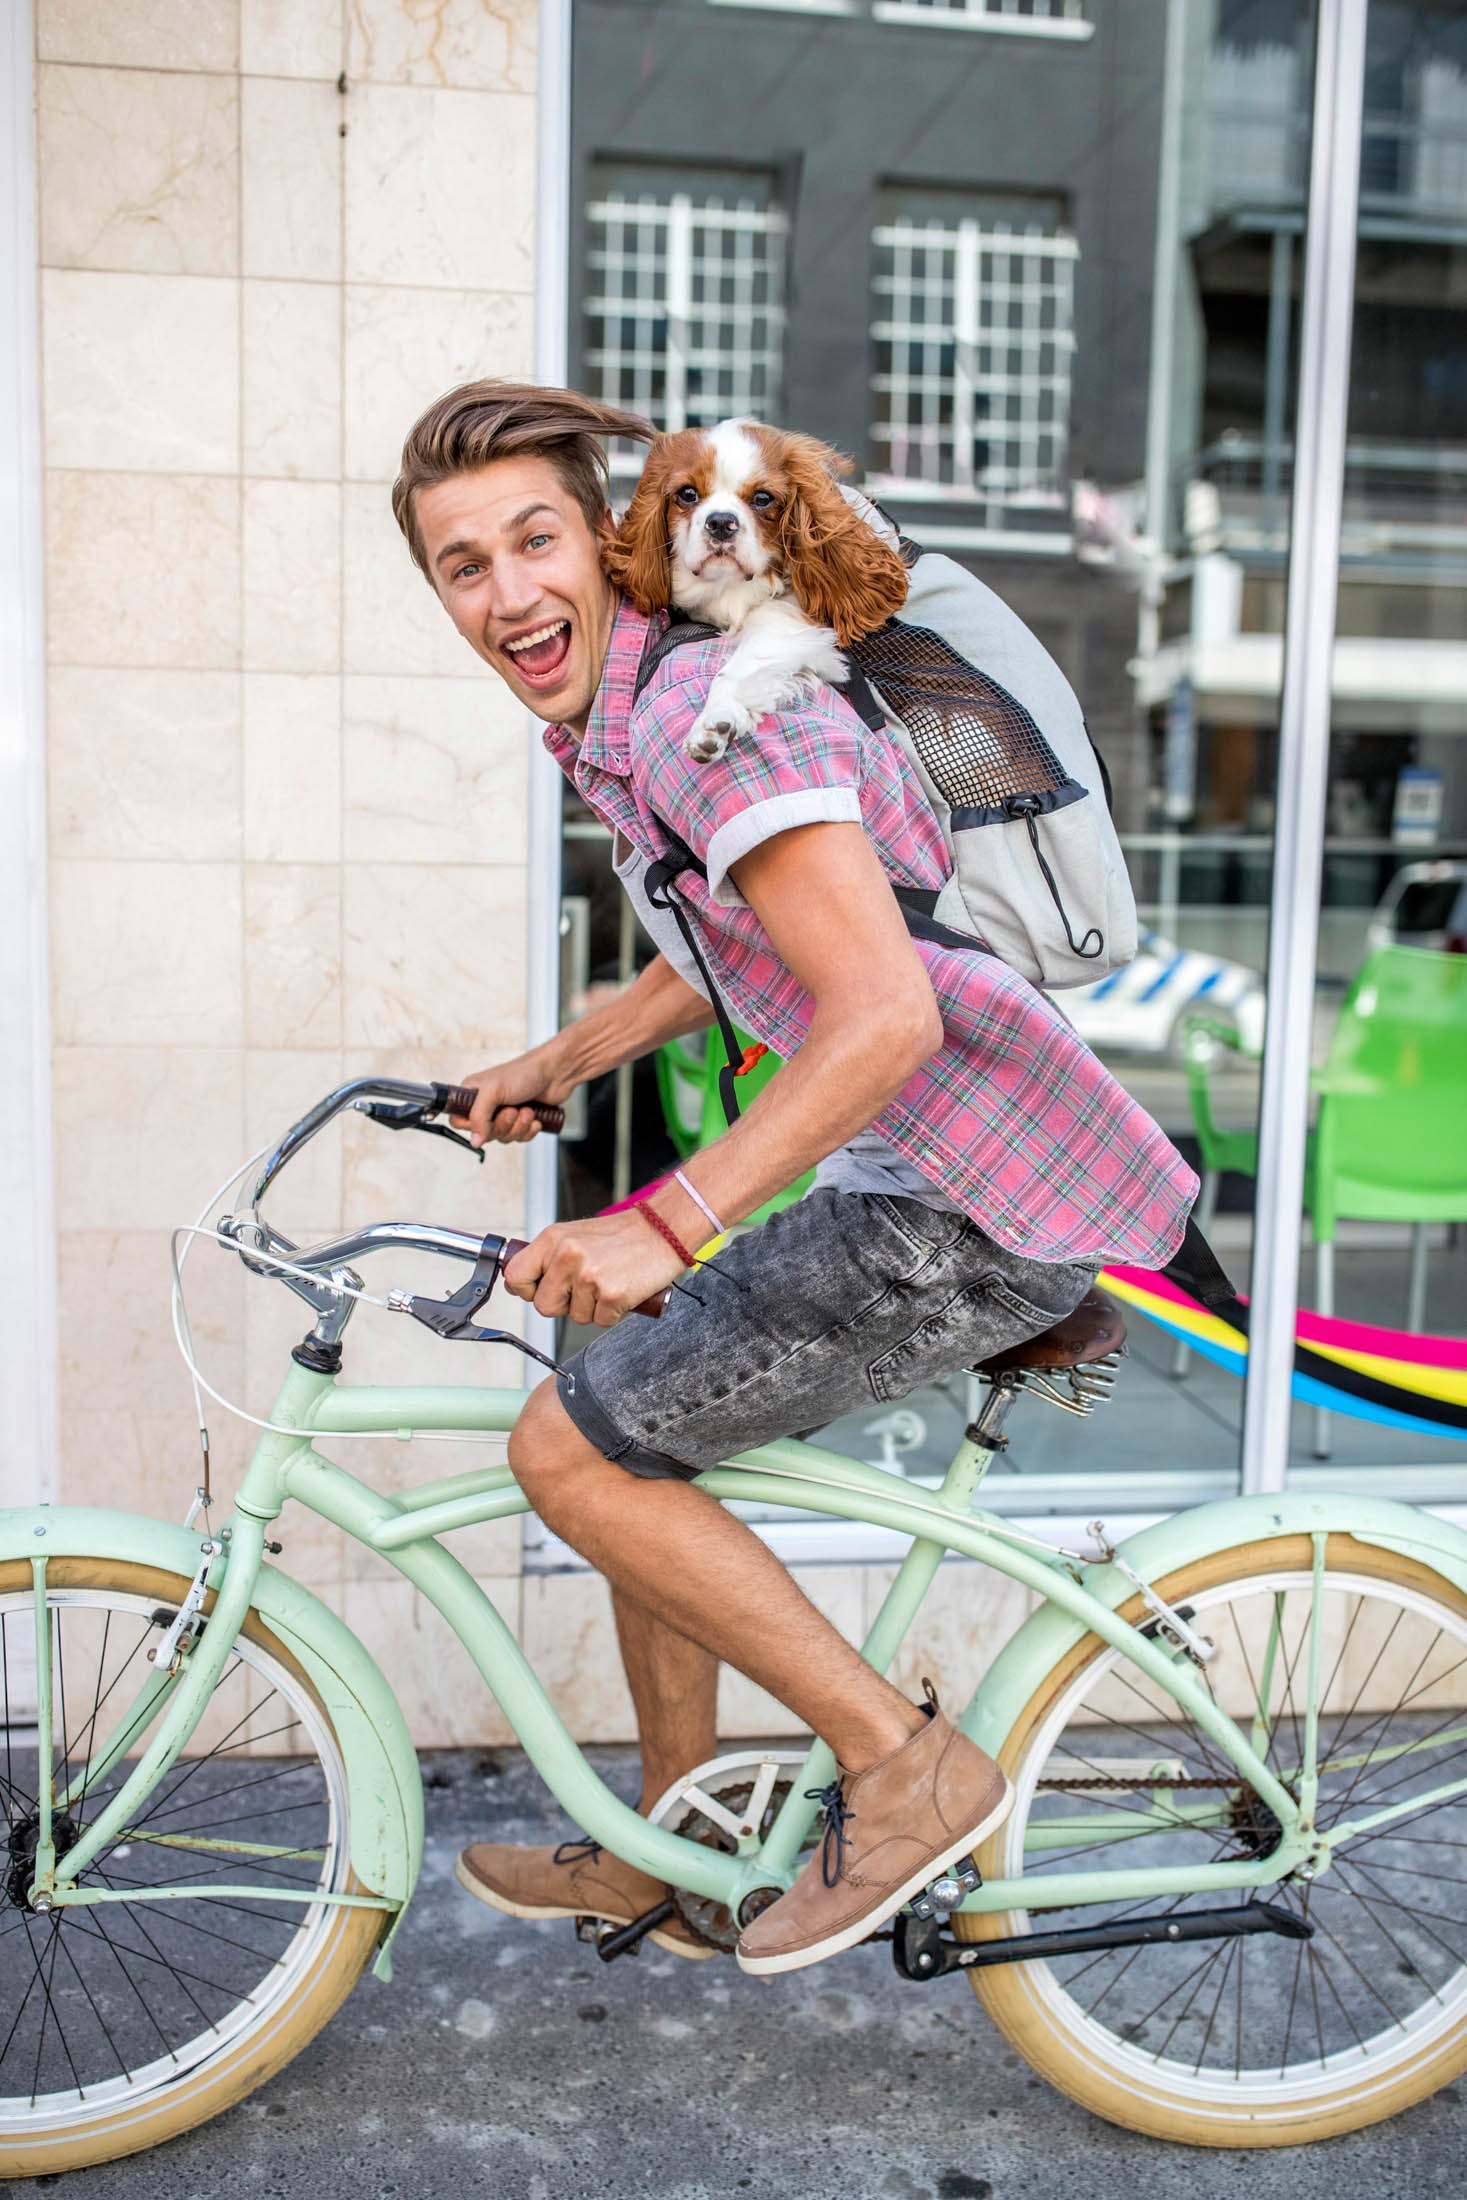 Ein fröhlicher junger Mann fährt in einer städtischen Umgebung auf einem Oldtimer-Fahrrad und hat einen kleinen Hund in einem Rucksack auf dem Rücken. Beide wirken glücklich und aufgeregt. © Fotografie Tomas Rodriguez